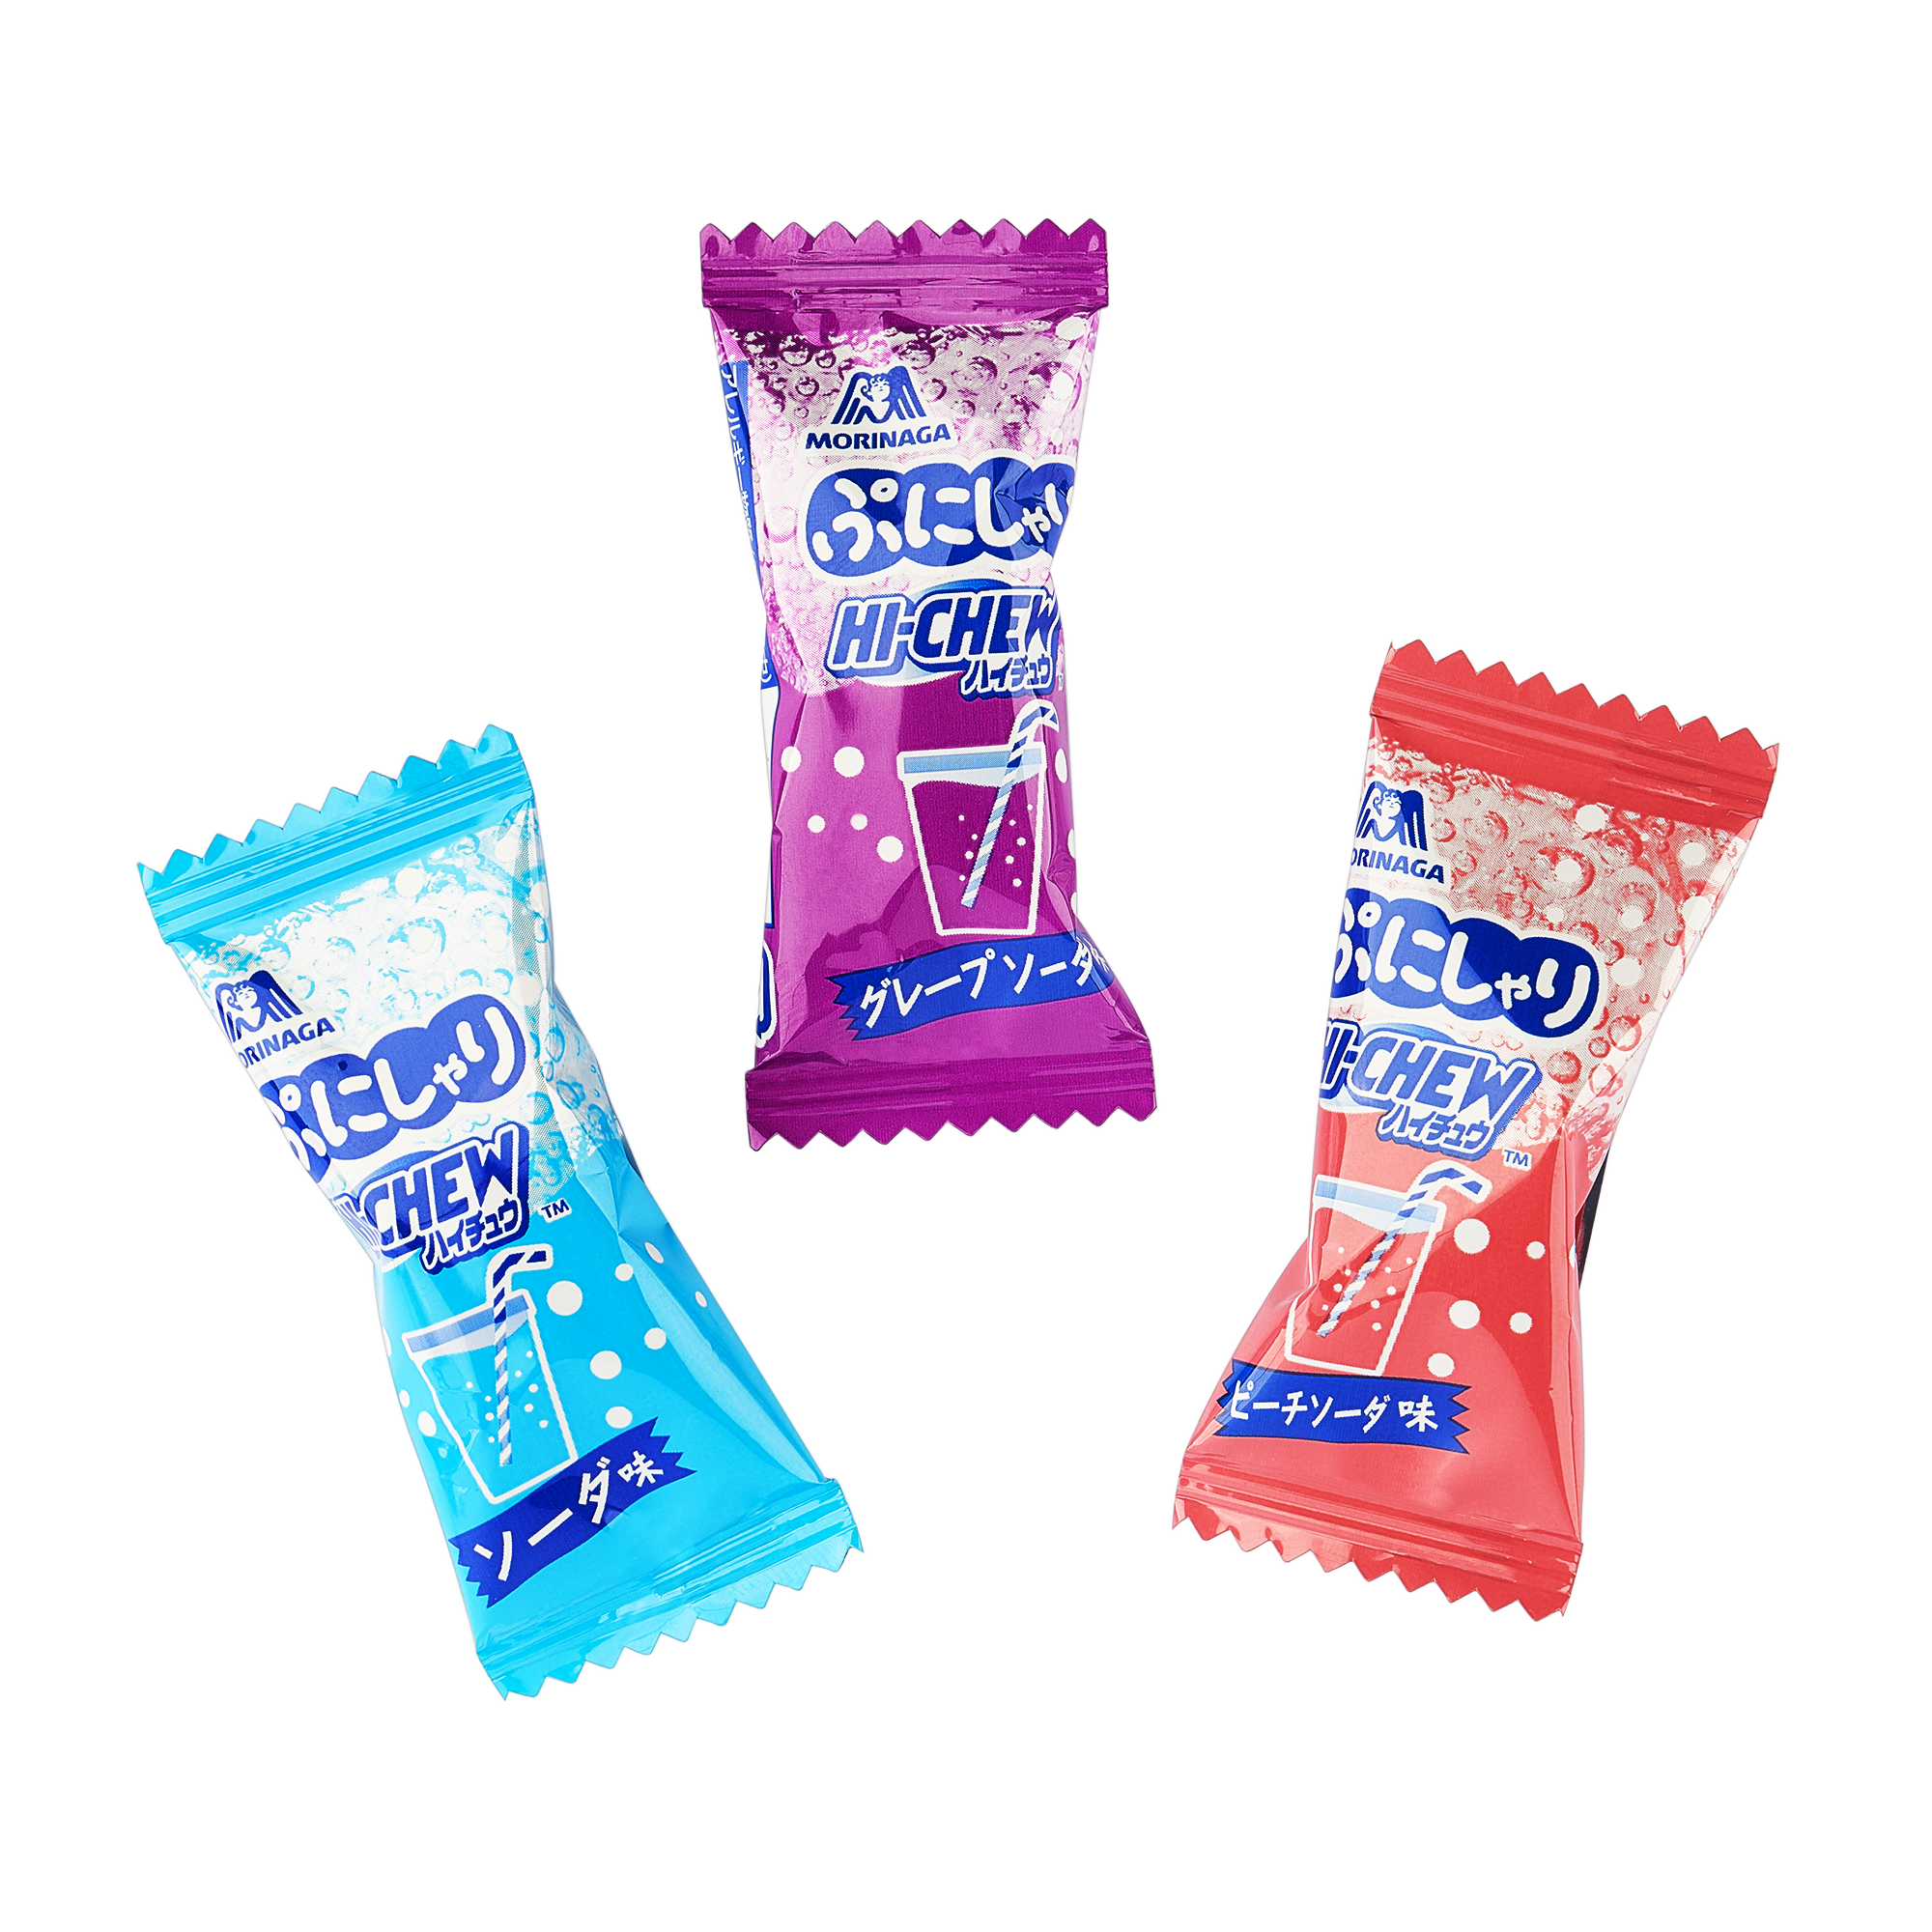 Hi-Chew soda gummy candy